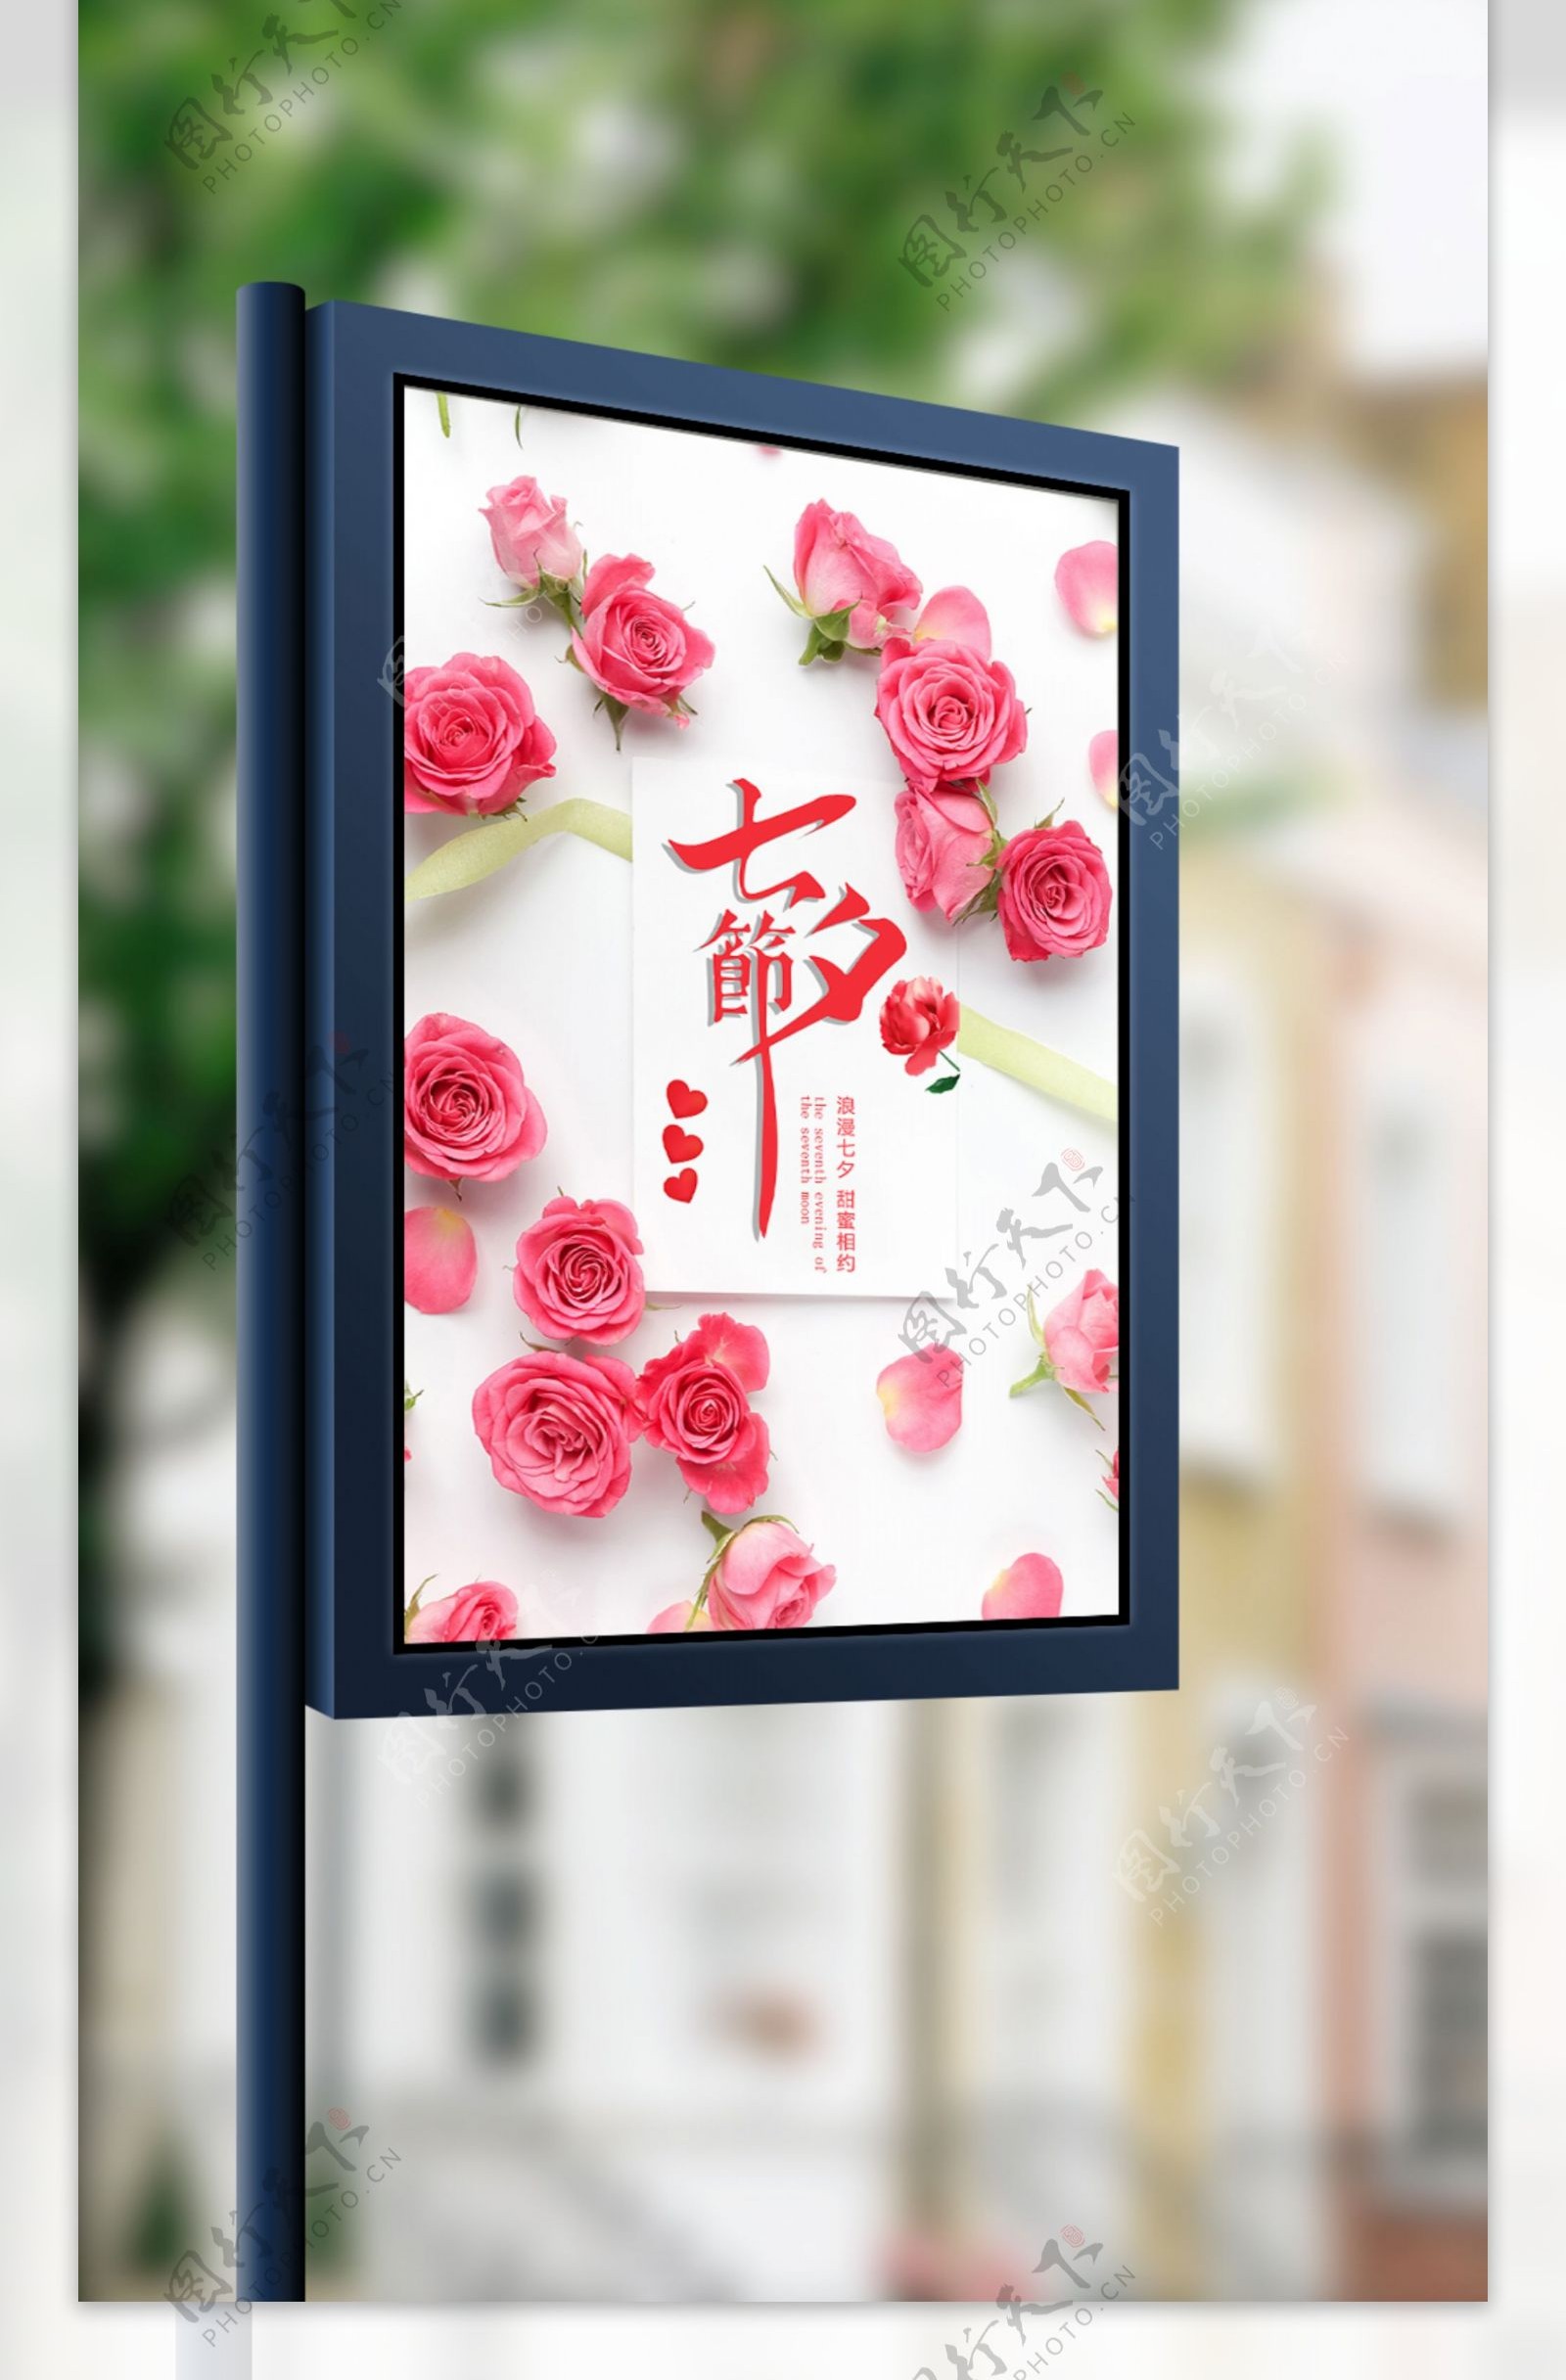 简约唯美清晰浪漫七夕节玫瑰花主题宣传海报